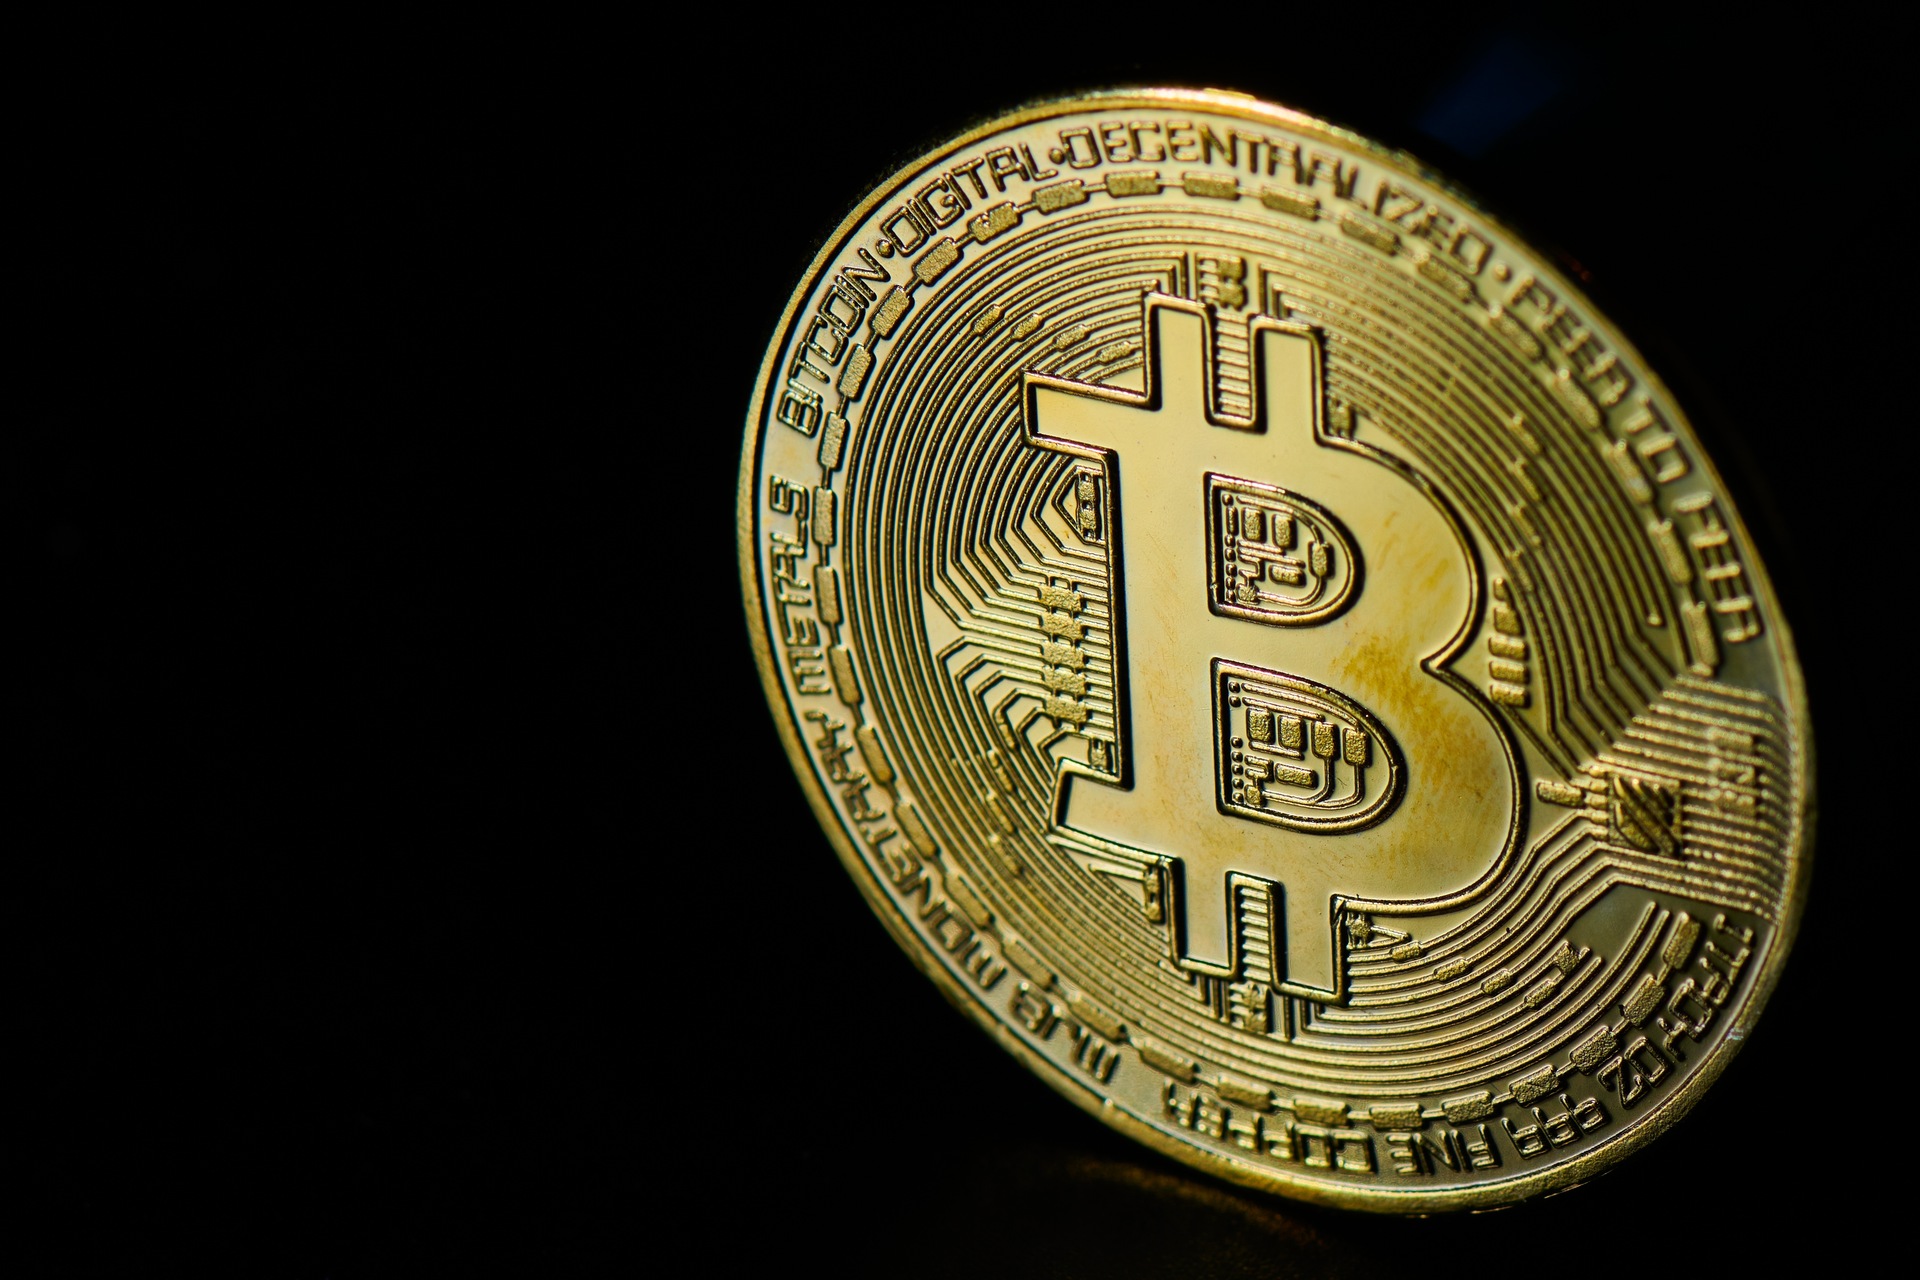 Kryptomeny: Bitcoin je kryptomena a medzinárodný platobný systém vytvorený v roku 2009 anonymným vynálezcom, známym pod pseudonymom „Satoshi Nakamoto“, ktorý vyvinul nápad, ktorý prezentoval na internete koncom roka 2008.